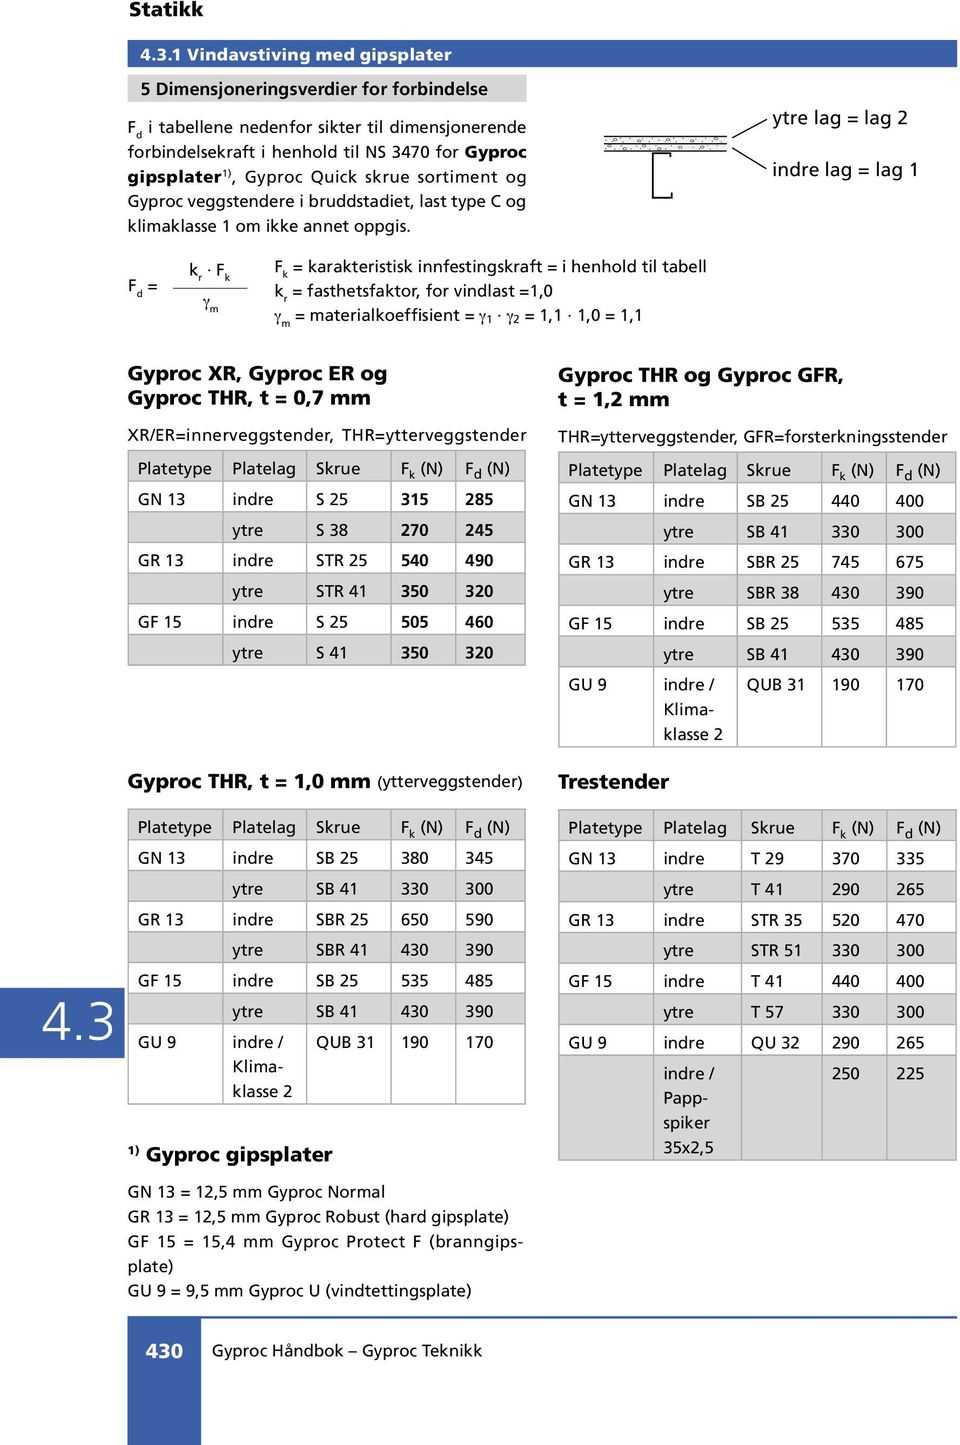 ytre lag lag 2 indre lag lag 1 F d k r F k γ m F k karakteristisk innfestingskraft i henhold til tabell k r fasthetsfaktor, for vindlast 1,0 γ m materialkoeffisient γ 1 γ 2 1,1 1,0 1,1 Gyproc XR,